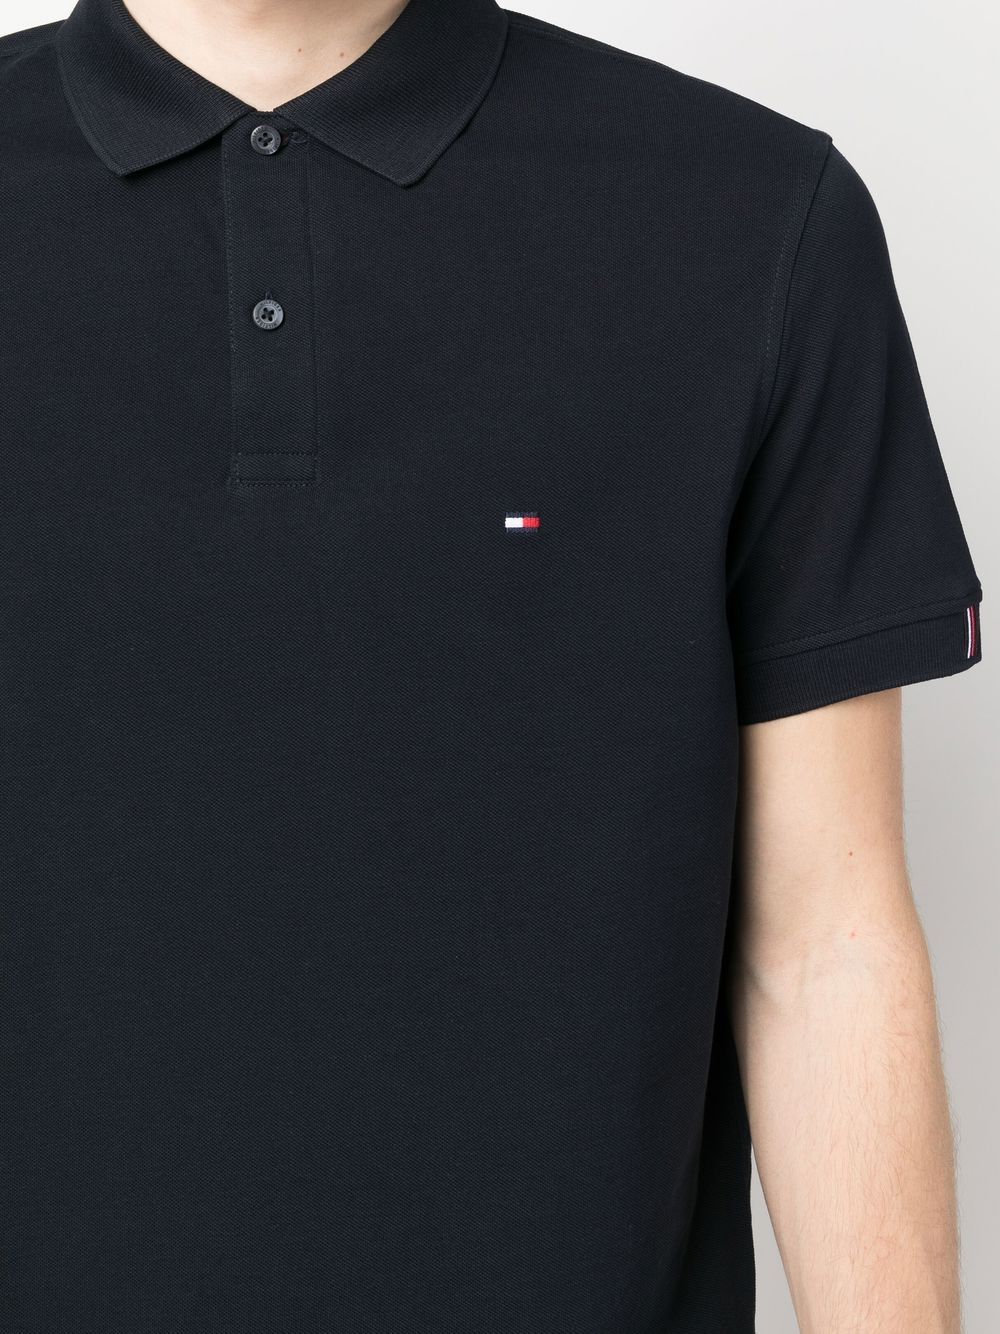 Tommy Hilfiger Camisa Polo Listrada Com Patch De Logo - Farfetch